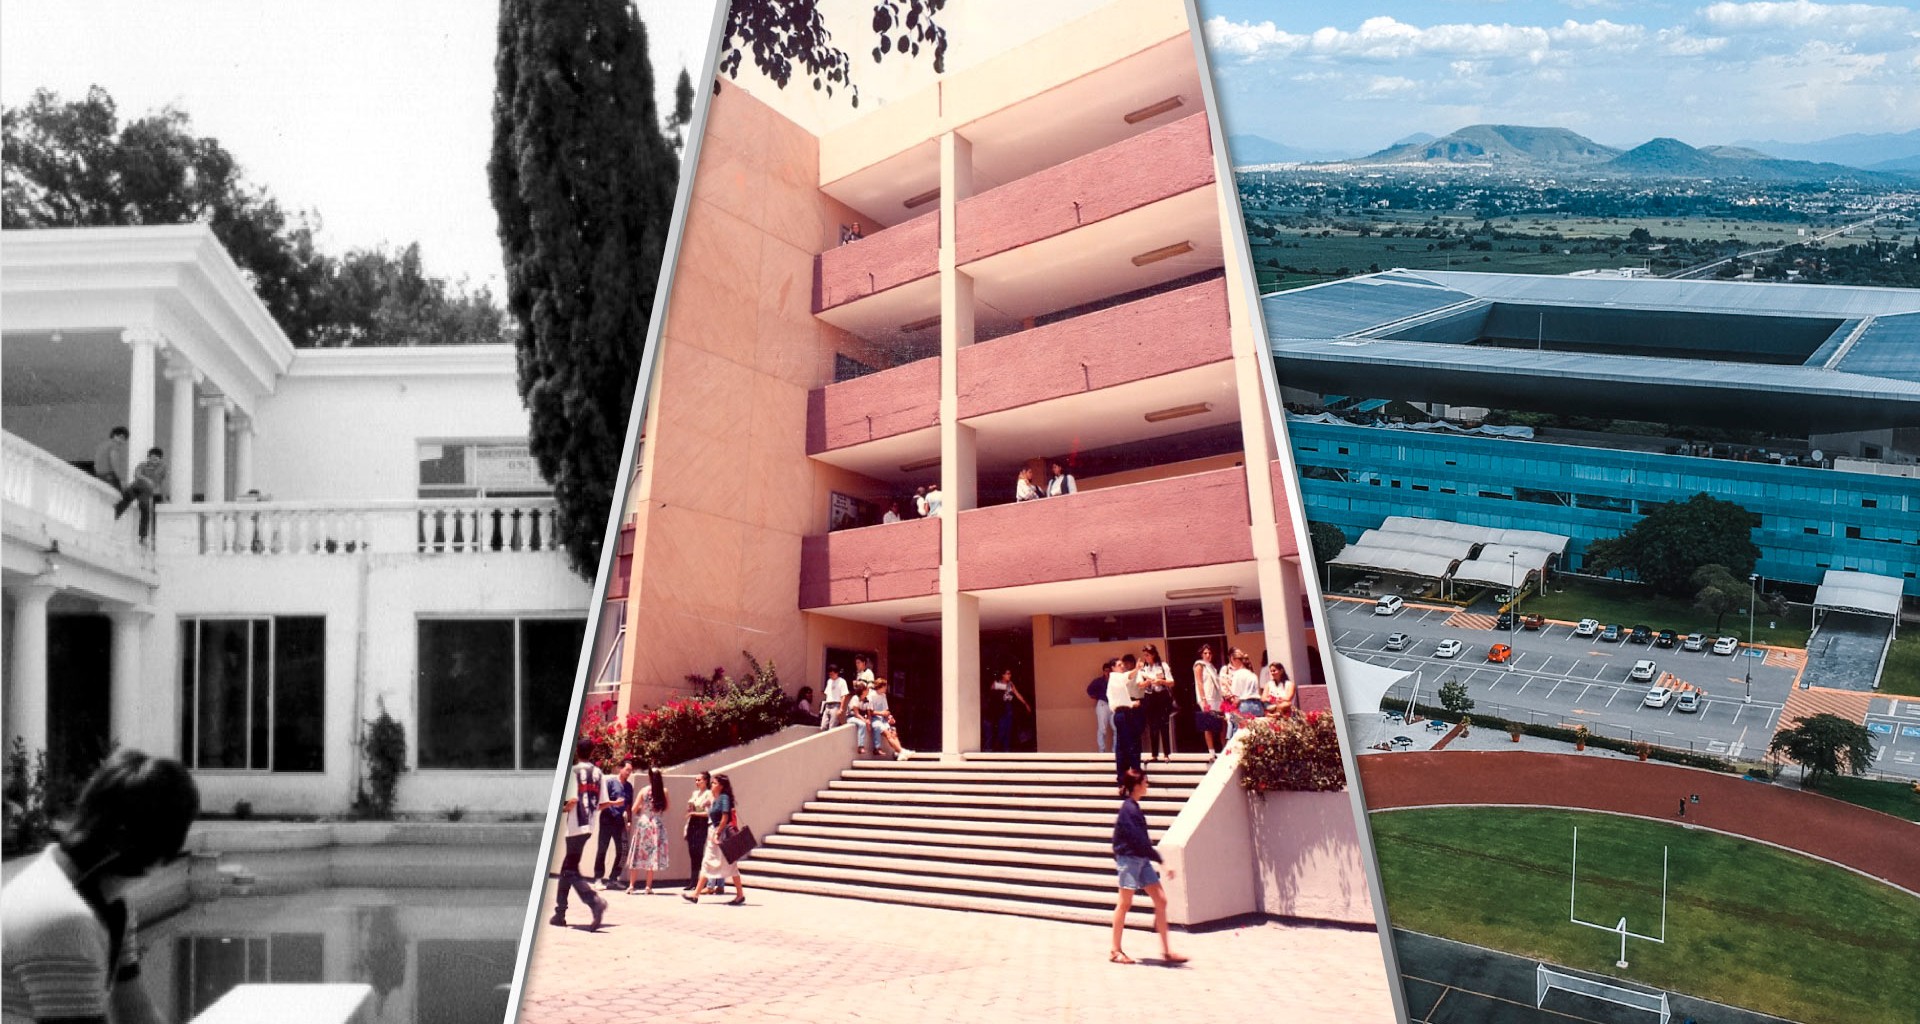 40 años del campus Cuernavaca en Morelos